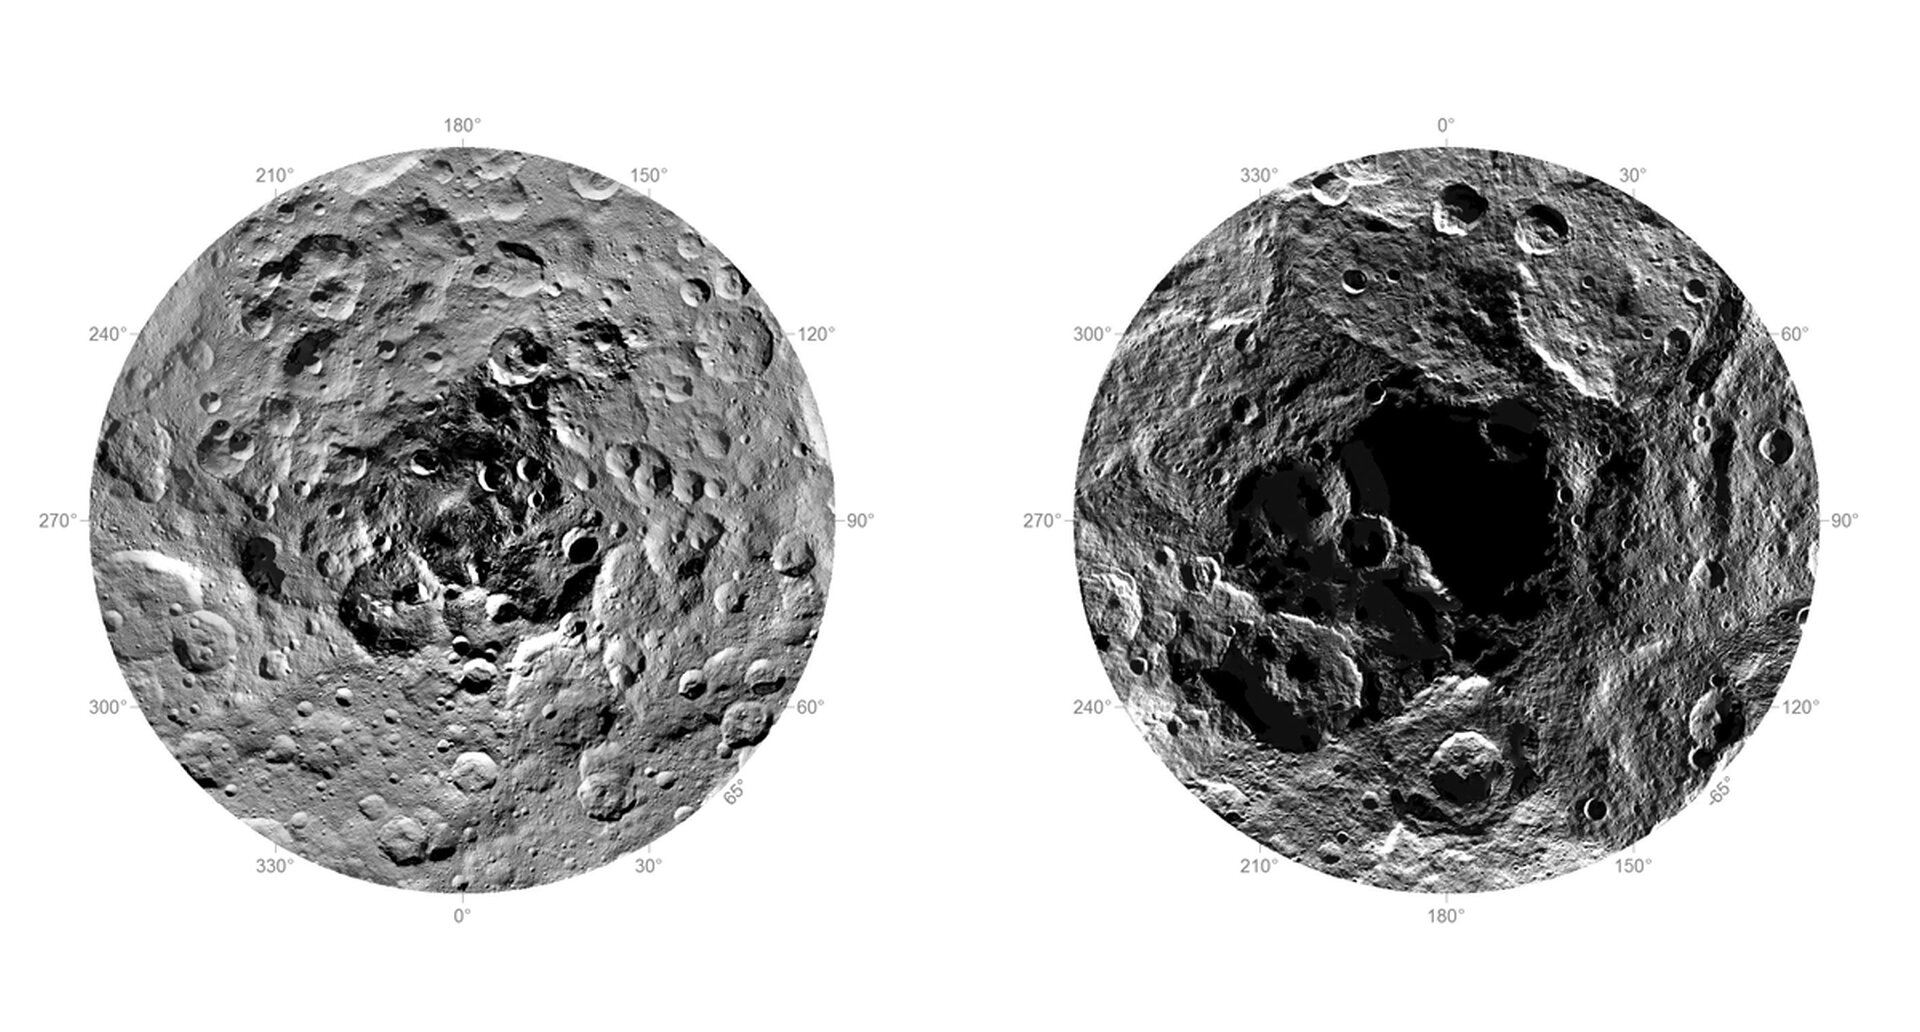 Rys. 4. Zdjęcie poglądowe przedstawia bieguny Ceres: północny (po lewej) i południowy (po prawej). Biegun południowy jest bardzo zaciemniony, powierzchnia jest nieregularna, różnej głębokości. Widocznych jest wiele kraterów. Biegun północny jest nieco łagodniejszy, bardziej oświetlony, pokazuje płytsze zagłębienia w dużej liczbie. Różnice w kształcie i budowie kraterów na obu biegunach są znaczące. Z uwagi na nierównomierny dostęp do światła słonecznego na biegunach, naukowcy chcą zbadać obecność lodu powierzchniowego.